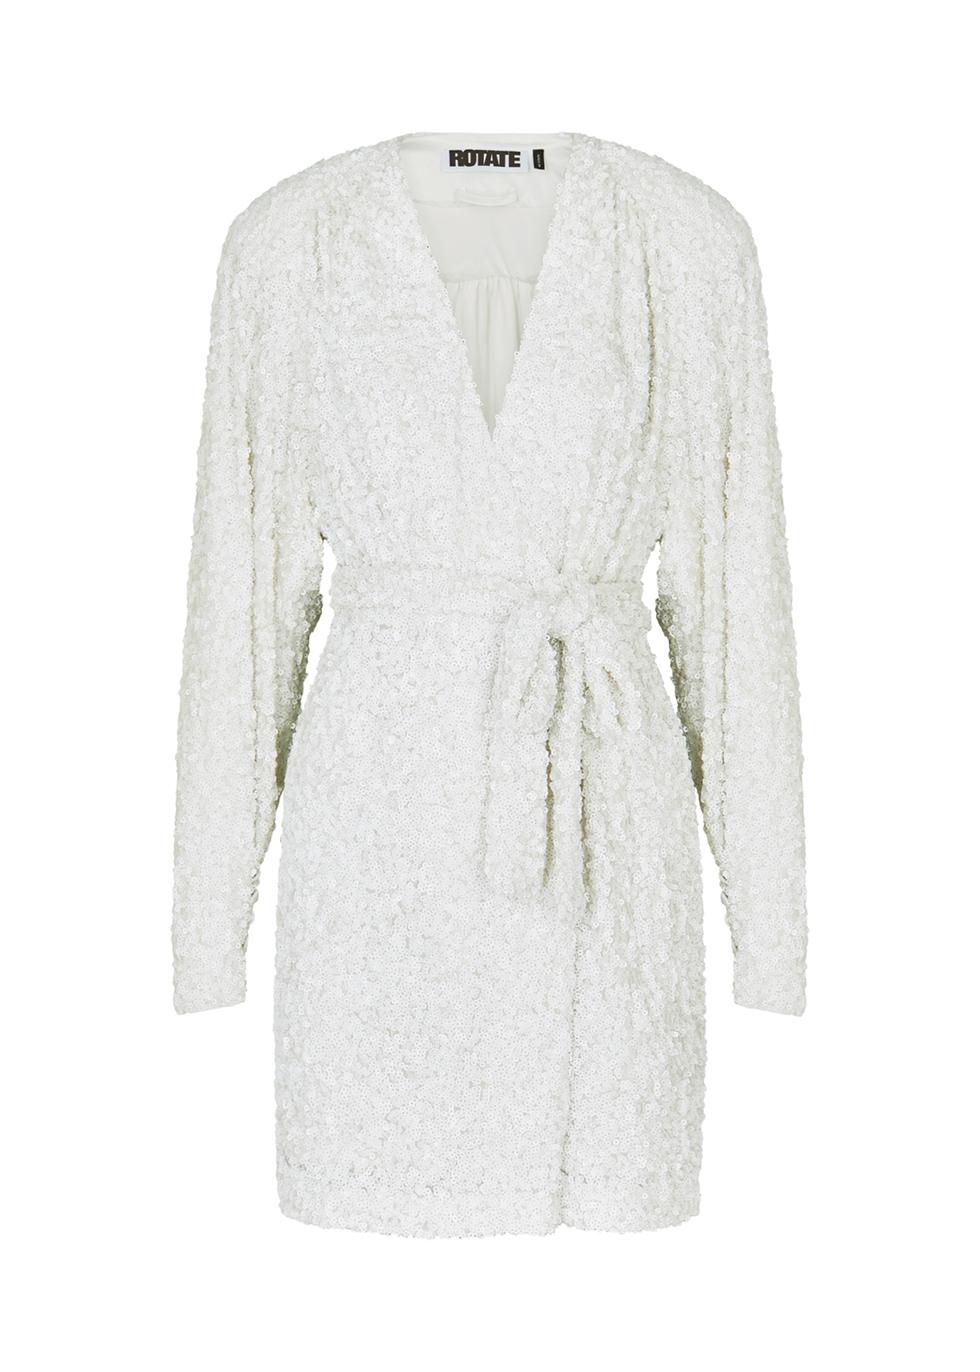 ROTATE BIRGER CHRISTENSEN Samantha Sequin Wrap Dress in White | Lyst